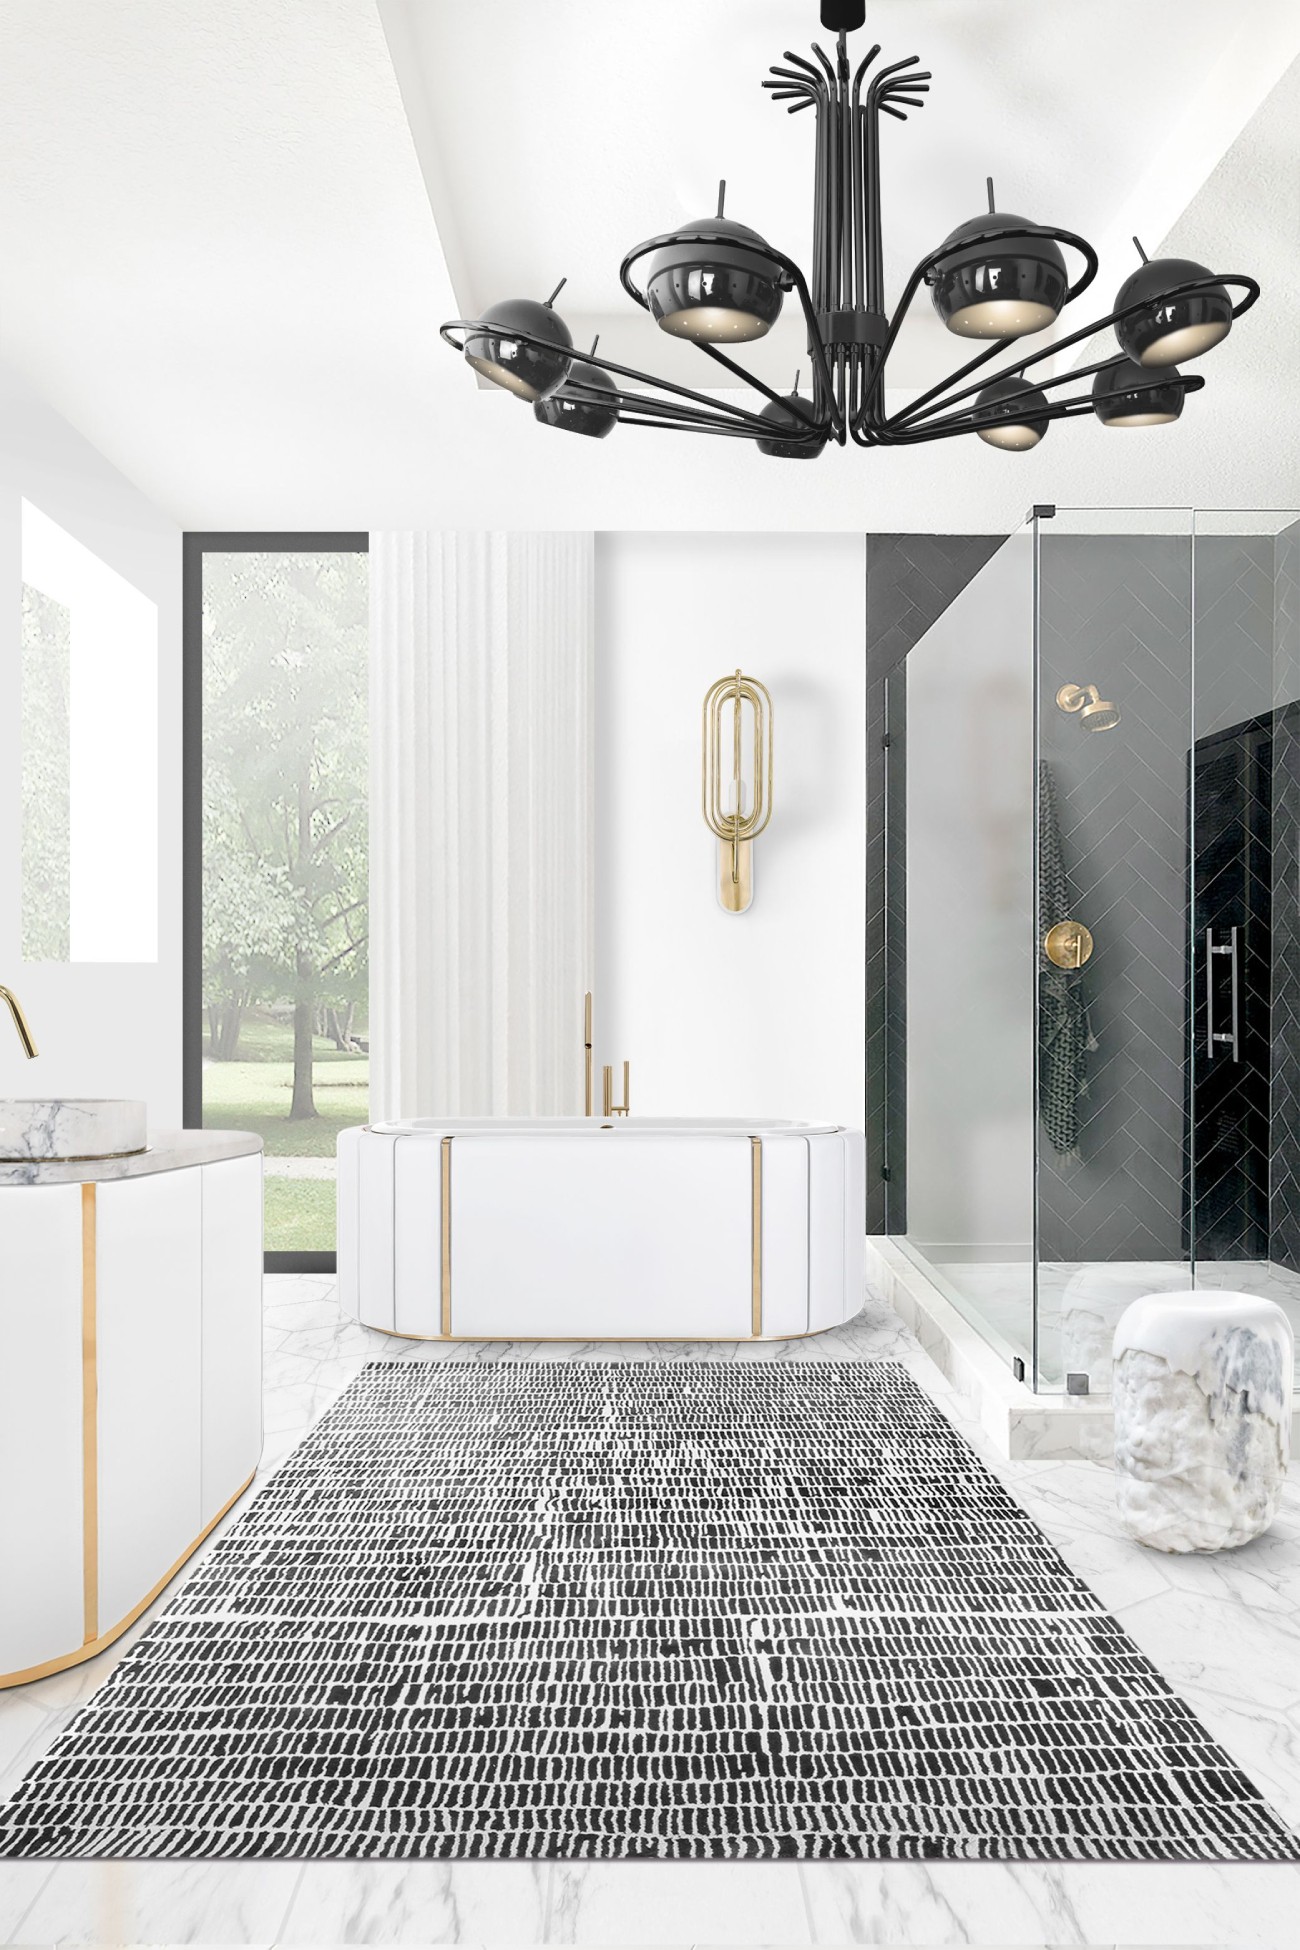 Elevating Luxury: Bathroom Interior Design with a Bathtub